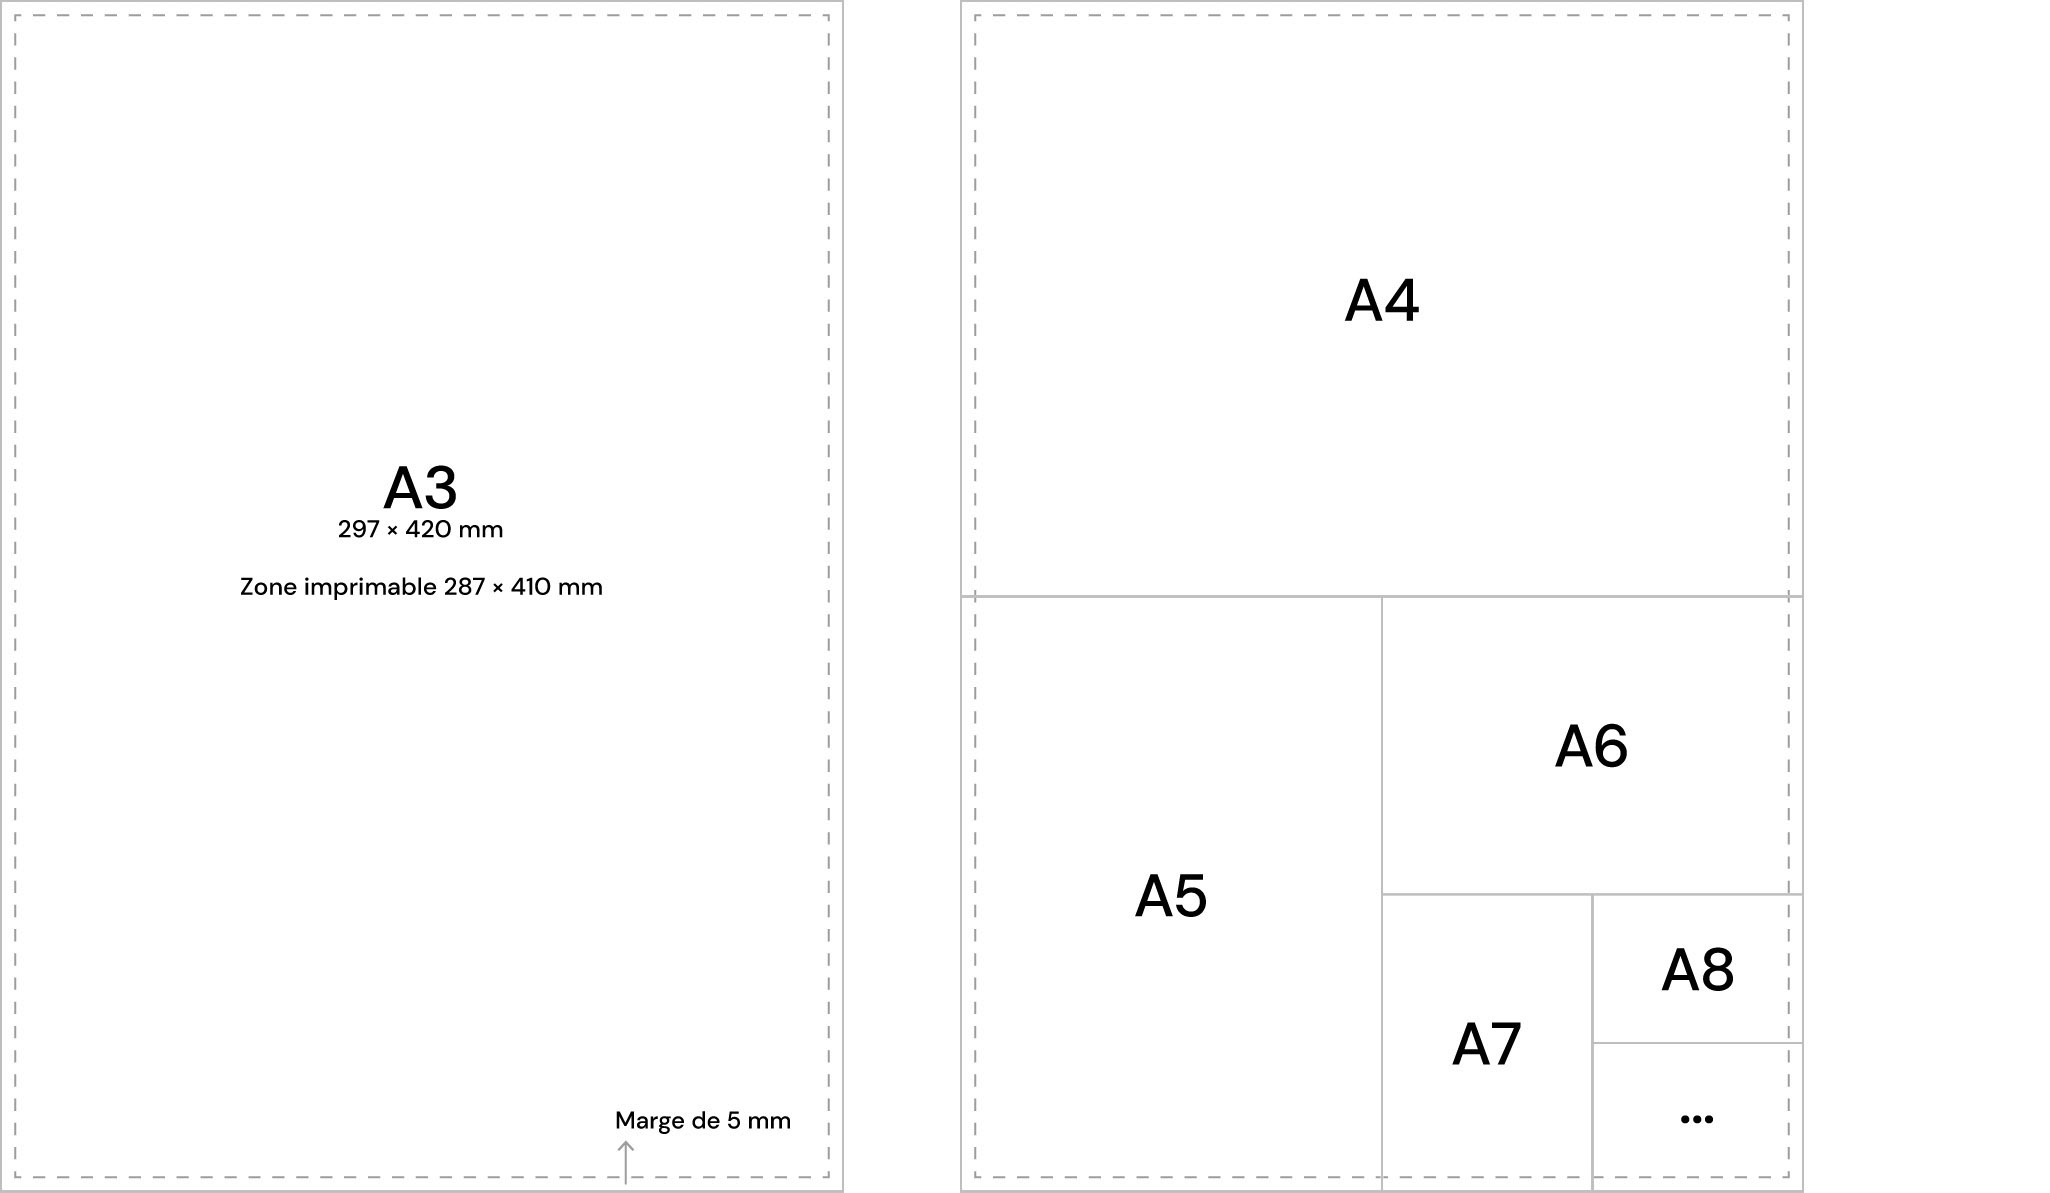 Zone imprimable et imposition A3 pour l'impression en risographie, schéma Système Sensible